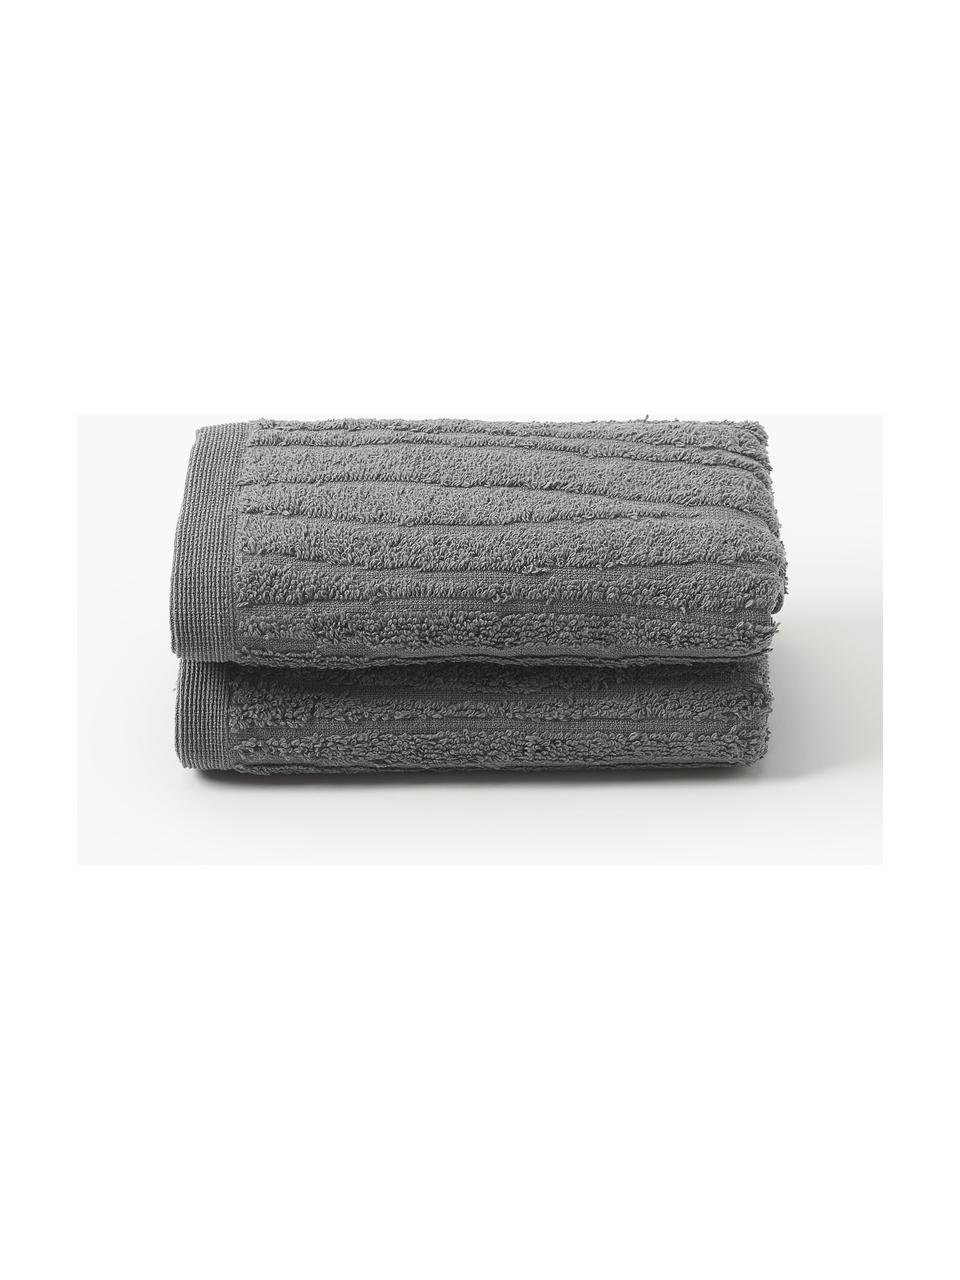 Bavlněný ručník Audrina, různé velikosti, Tmavě šedá, Ručník, Š 50 cm, D 100 cm, 2 ks